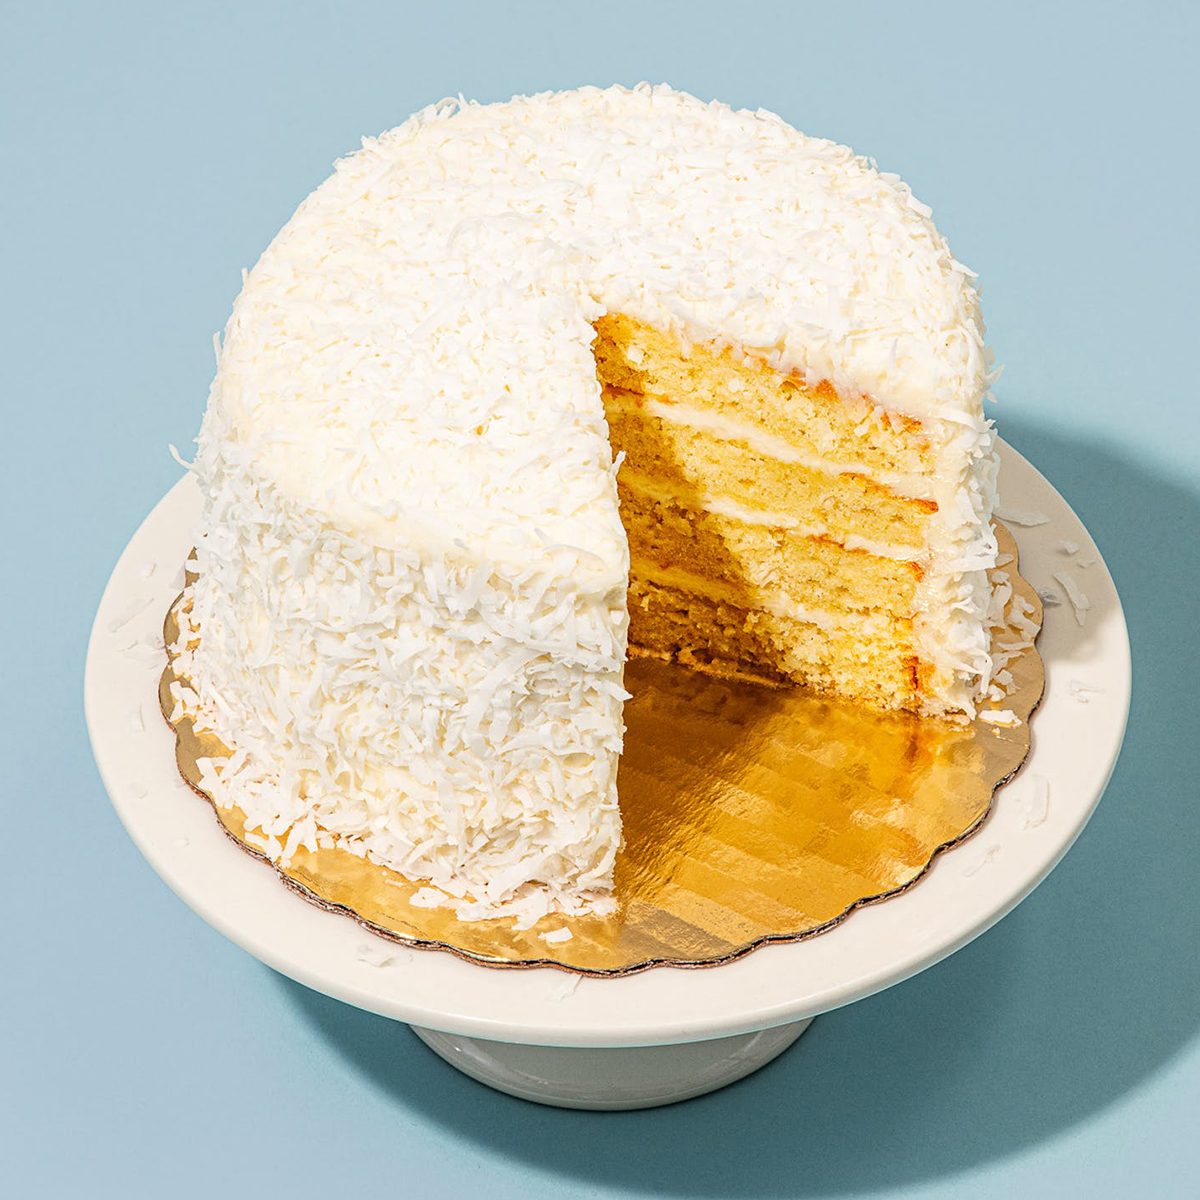 Ina Garten’s Coconut Cake